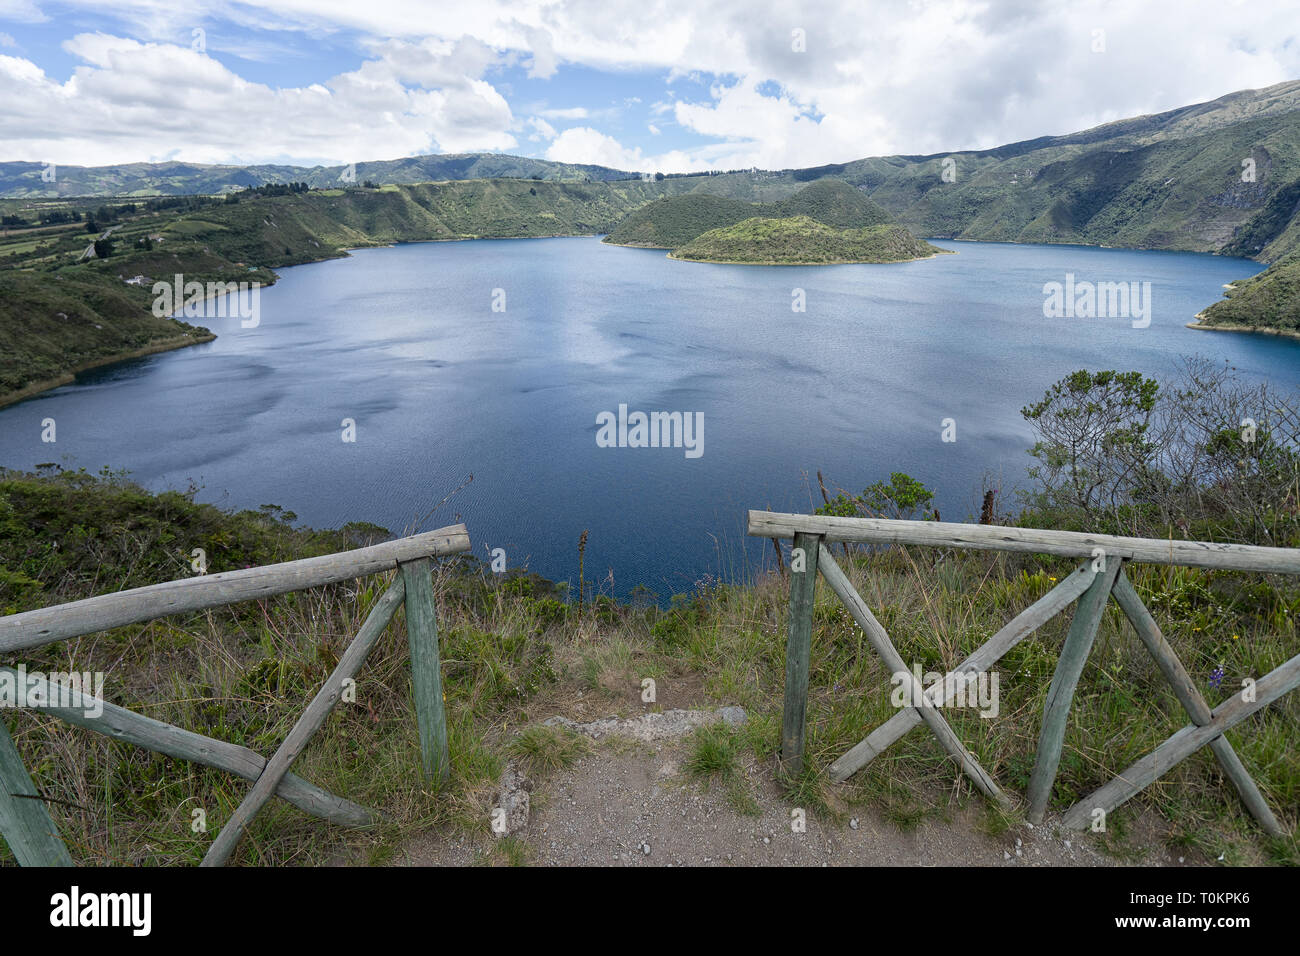 El lago Cuicocha en Ecuador Foto de stock